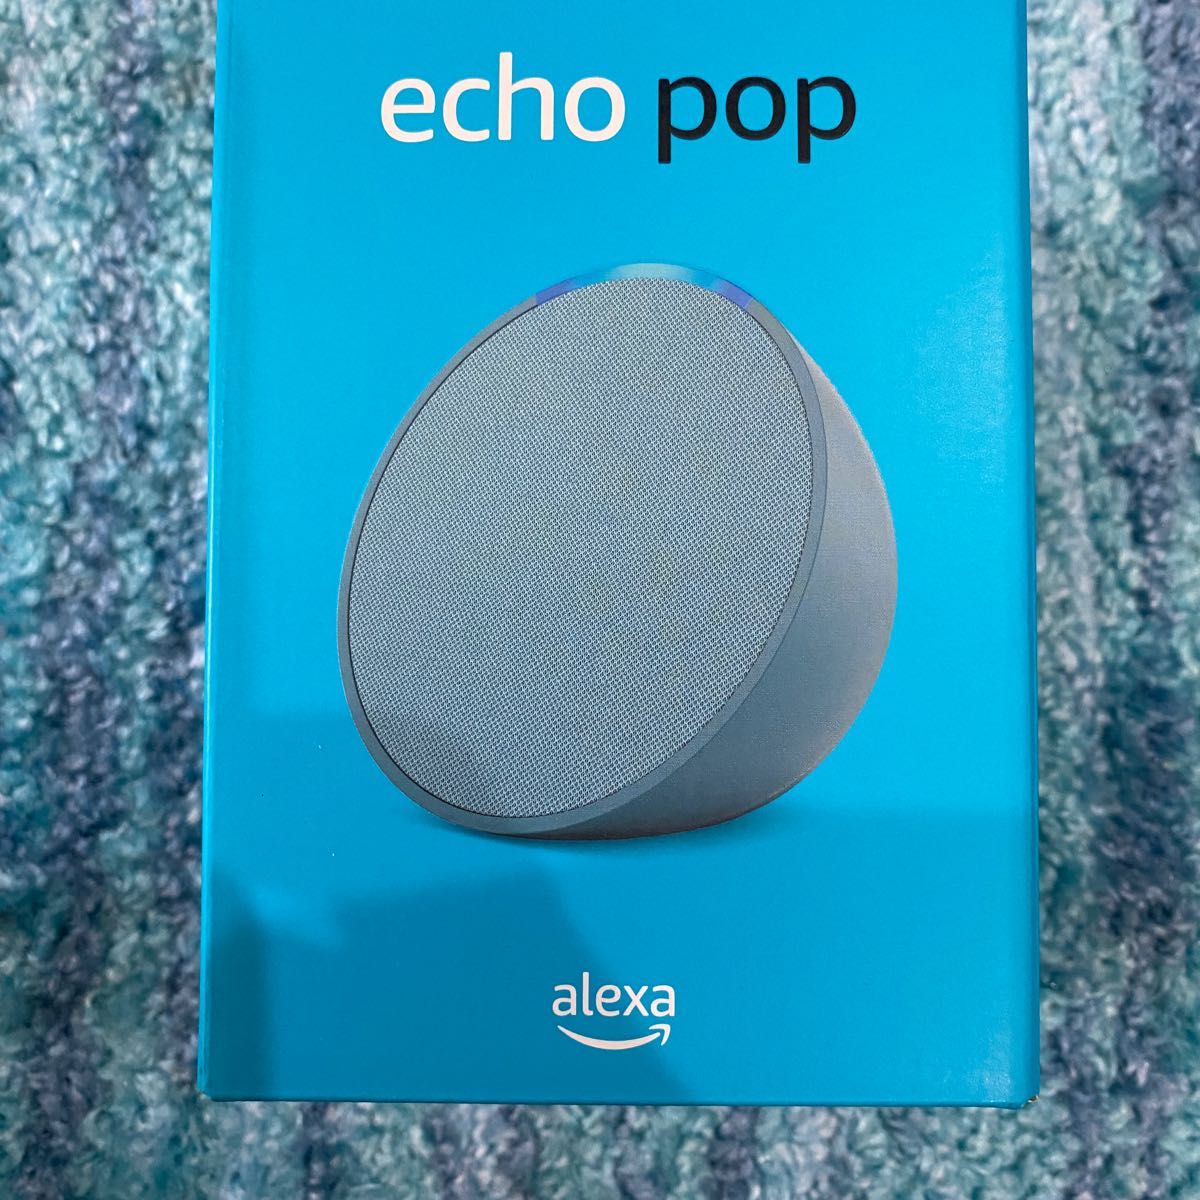 【新品】アマゾン Echo Pop (エコーポップ) コンパクトスマートスピーカー with Alexa ティールグリーン